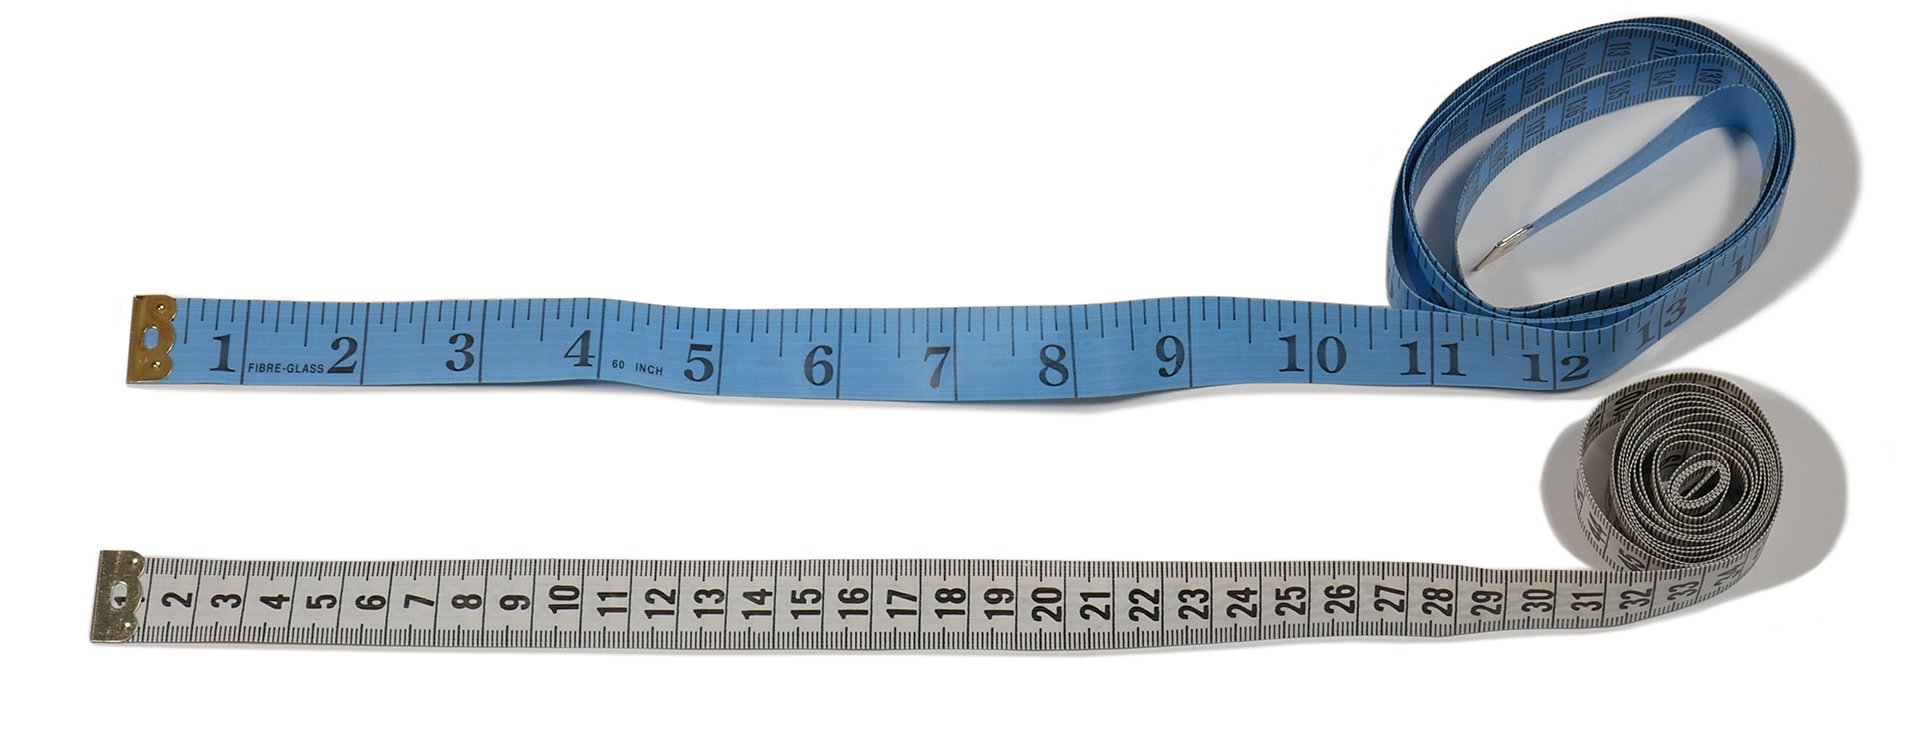 Фото 1. Измерительные ленты в сантиметрах и дюймах.